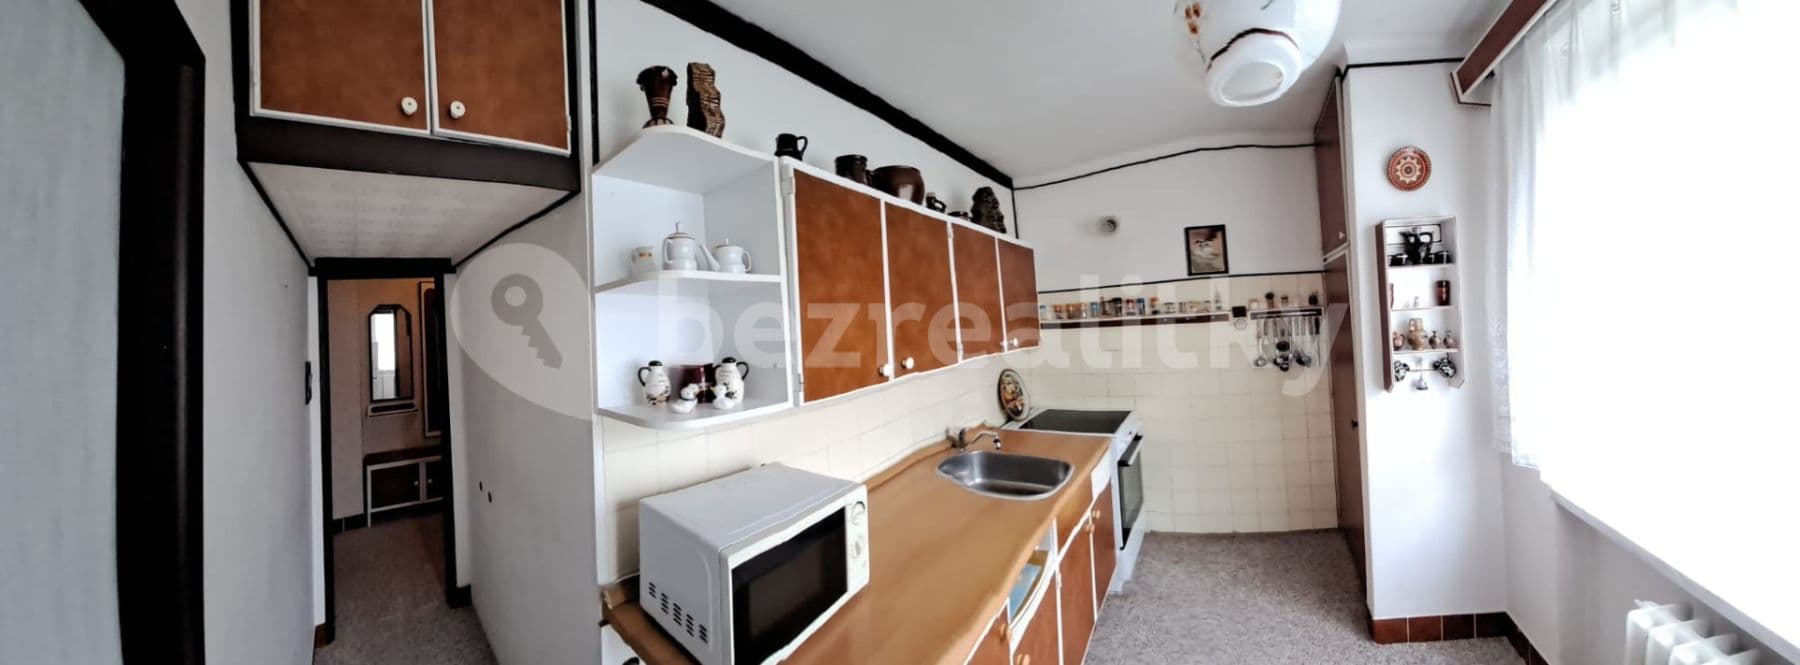 2 bedroom flat for sale, 56 m², Mírová, Bohumín, Moravskoslezský Region